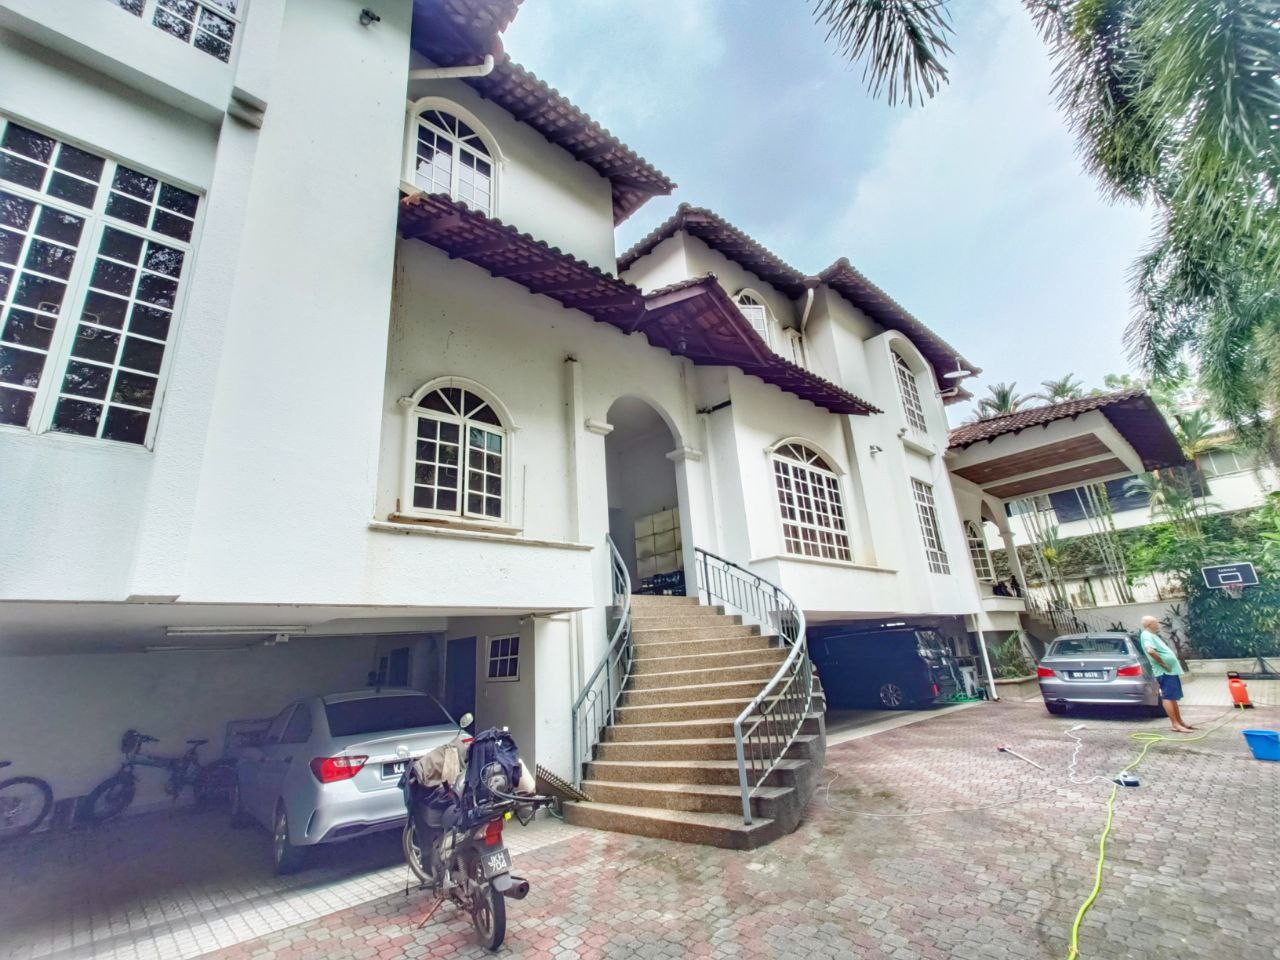 2 UNIT BUNGALOW IN ONE LAND, PRESTIGE LOCATION 2 Storey Bungalow House Bukit Tunku Kuala Lumpur Kenny Hills Kuala Lumpur